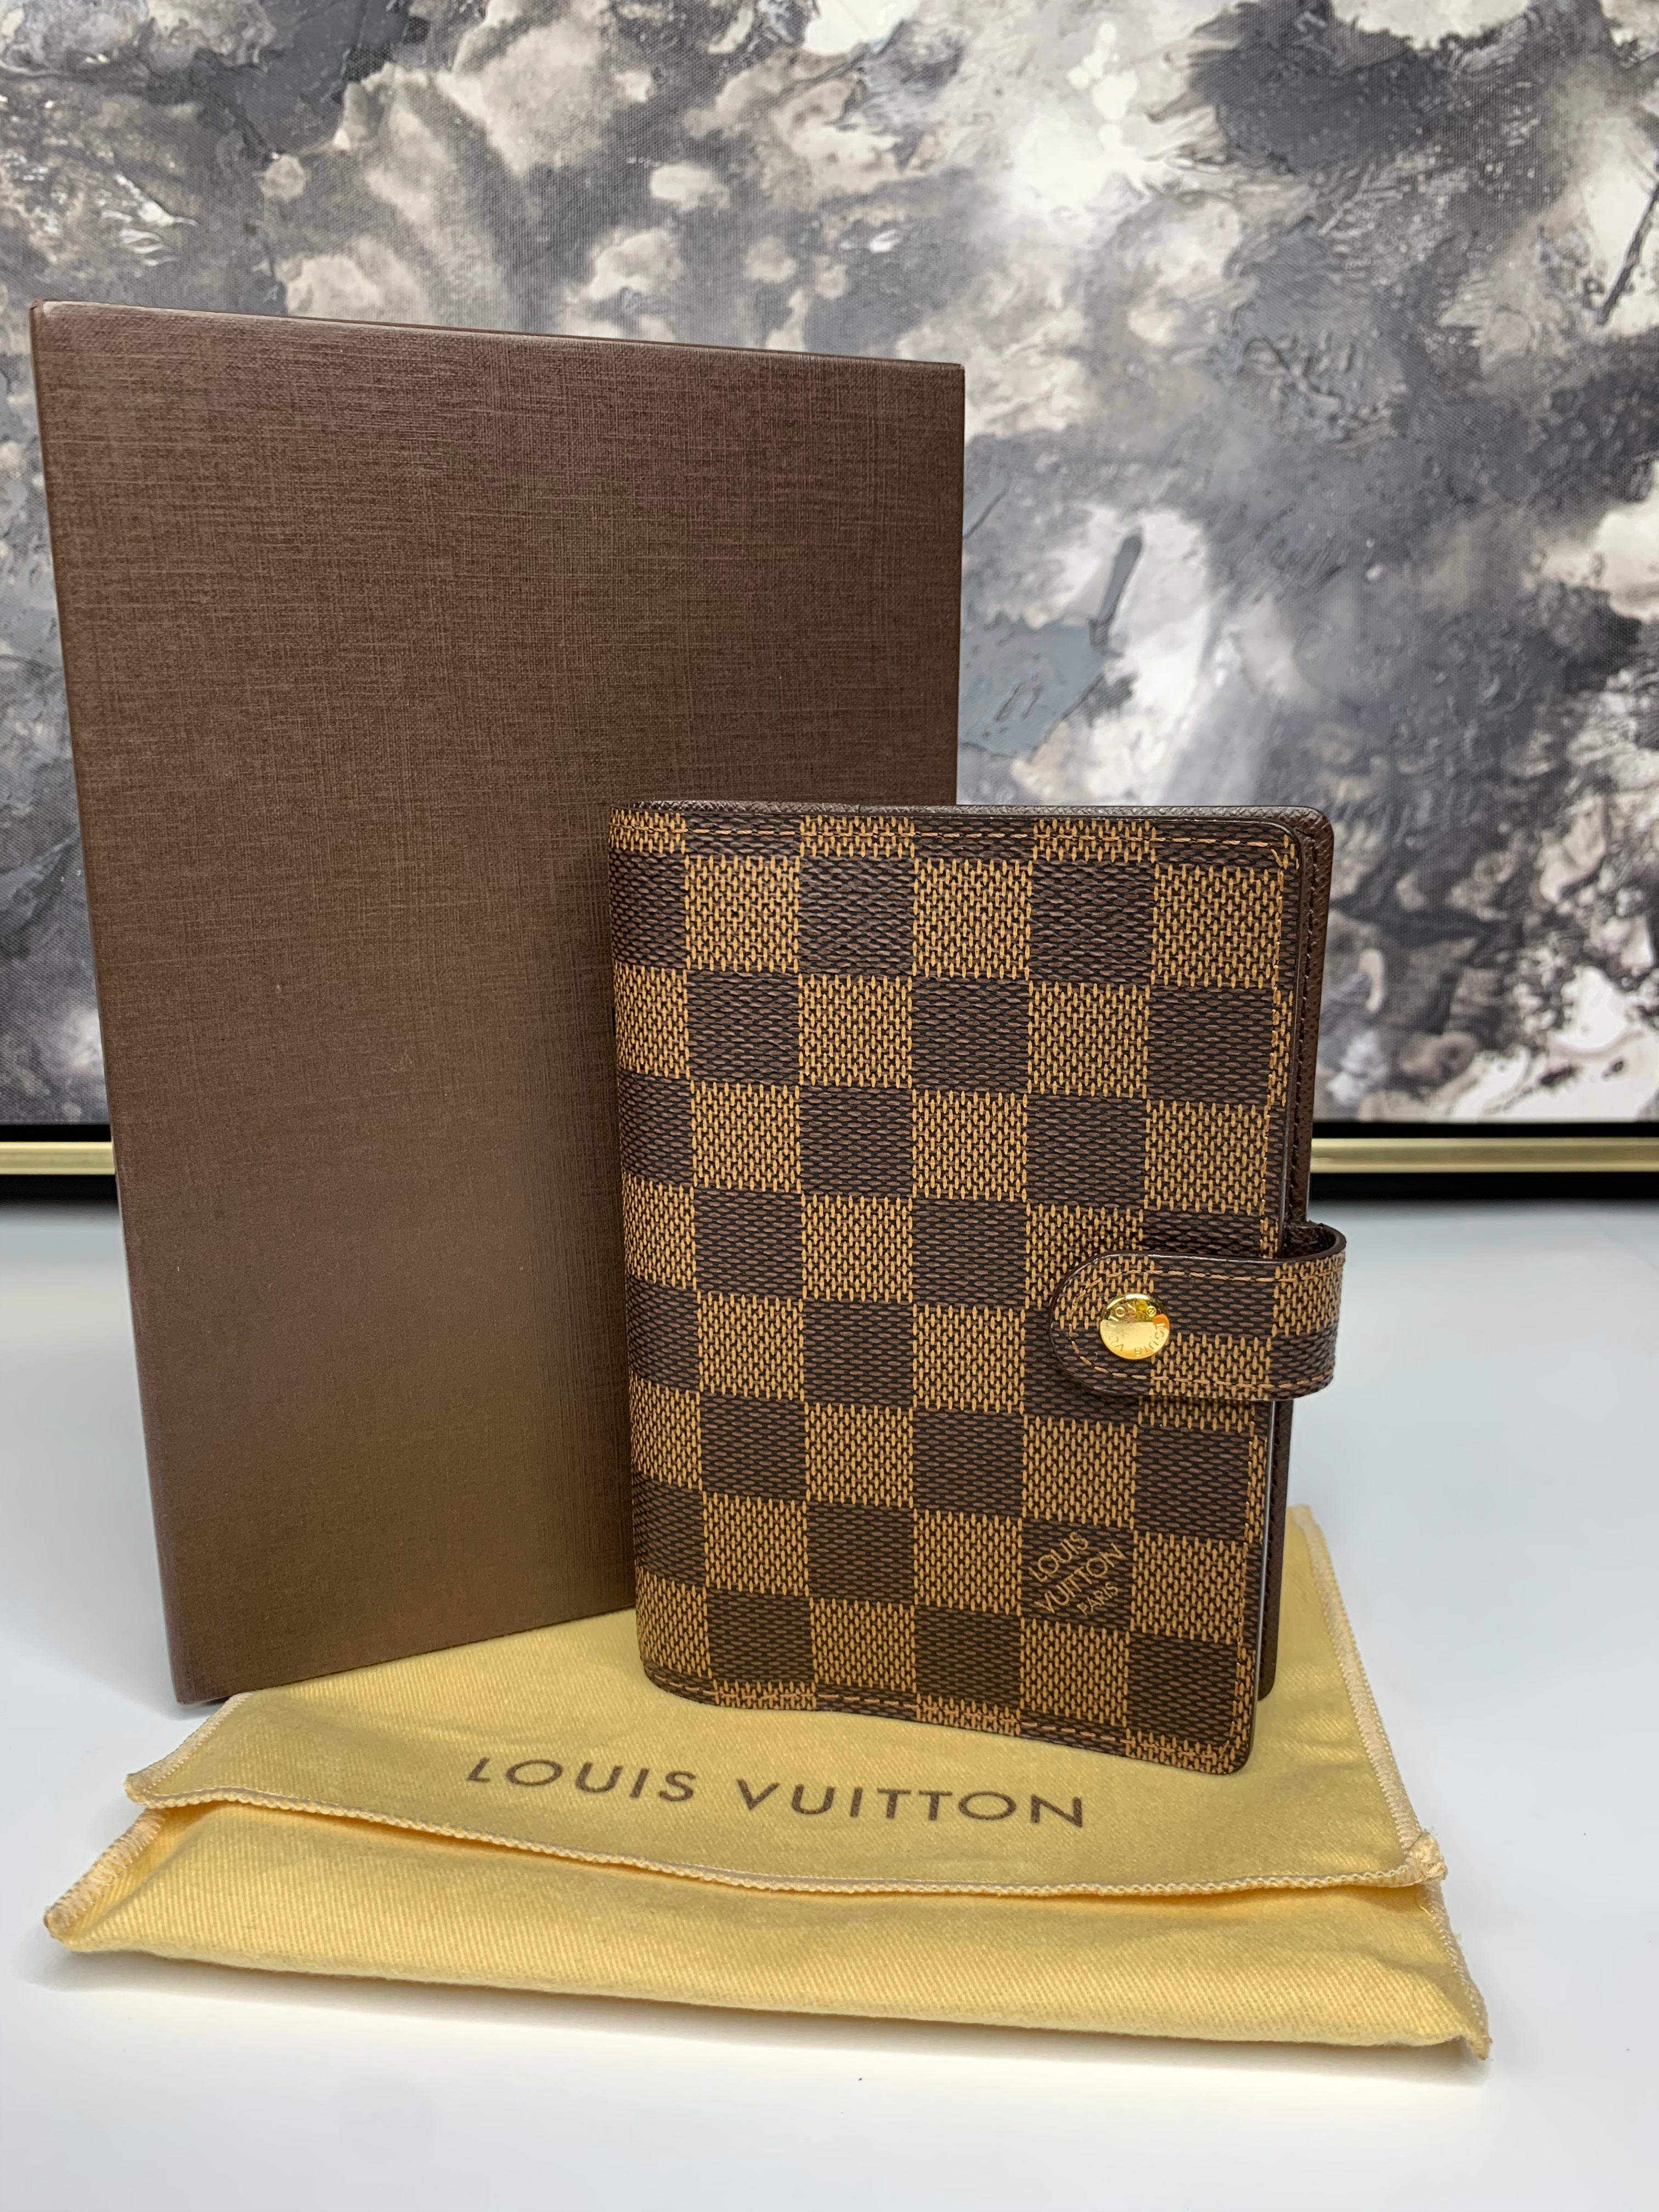 New In: Louis Vuitton Monogram Pm Agenda